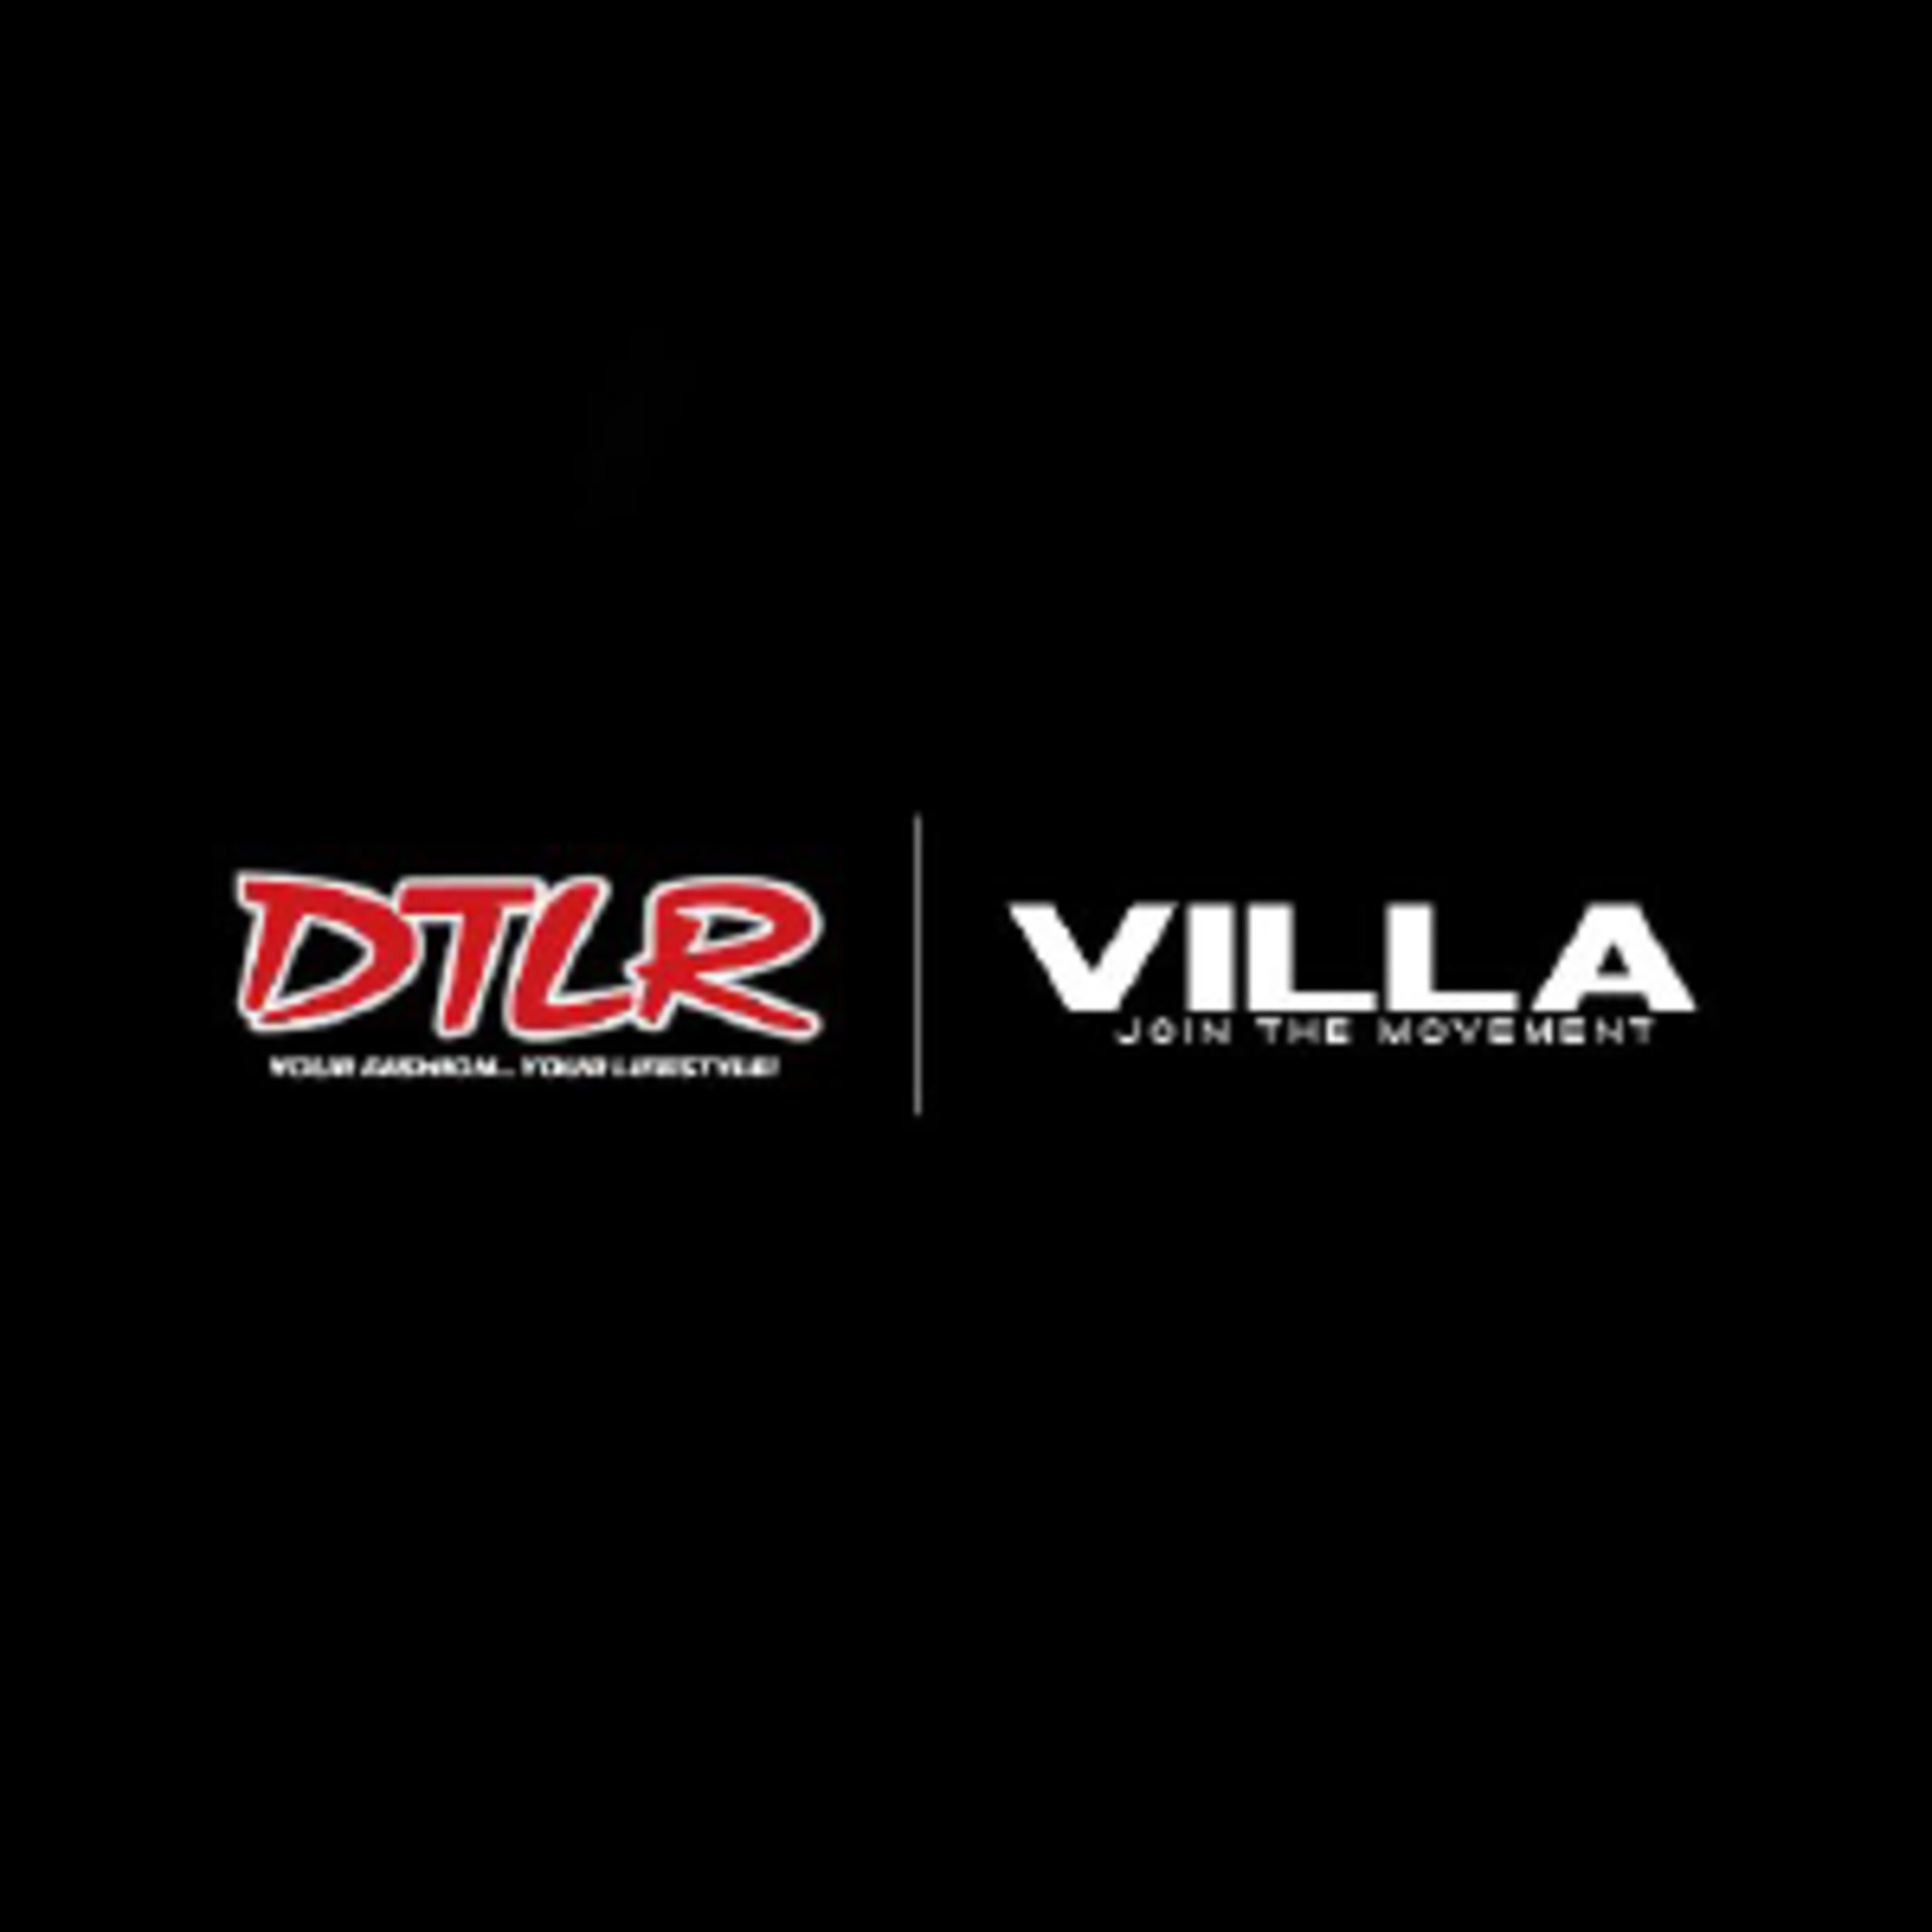 DTLR-Villa Code